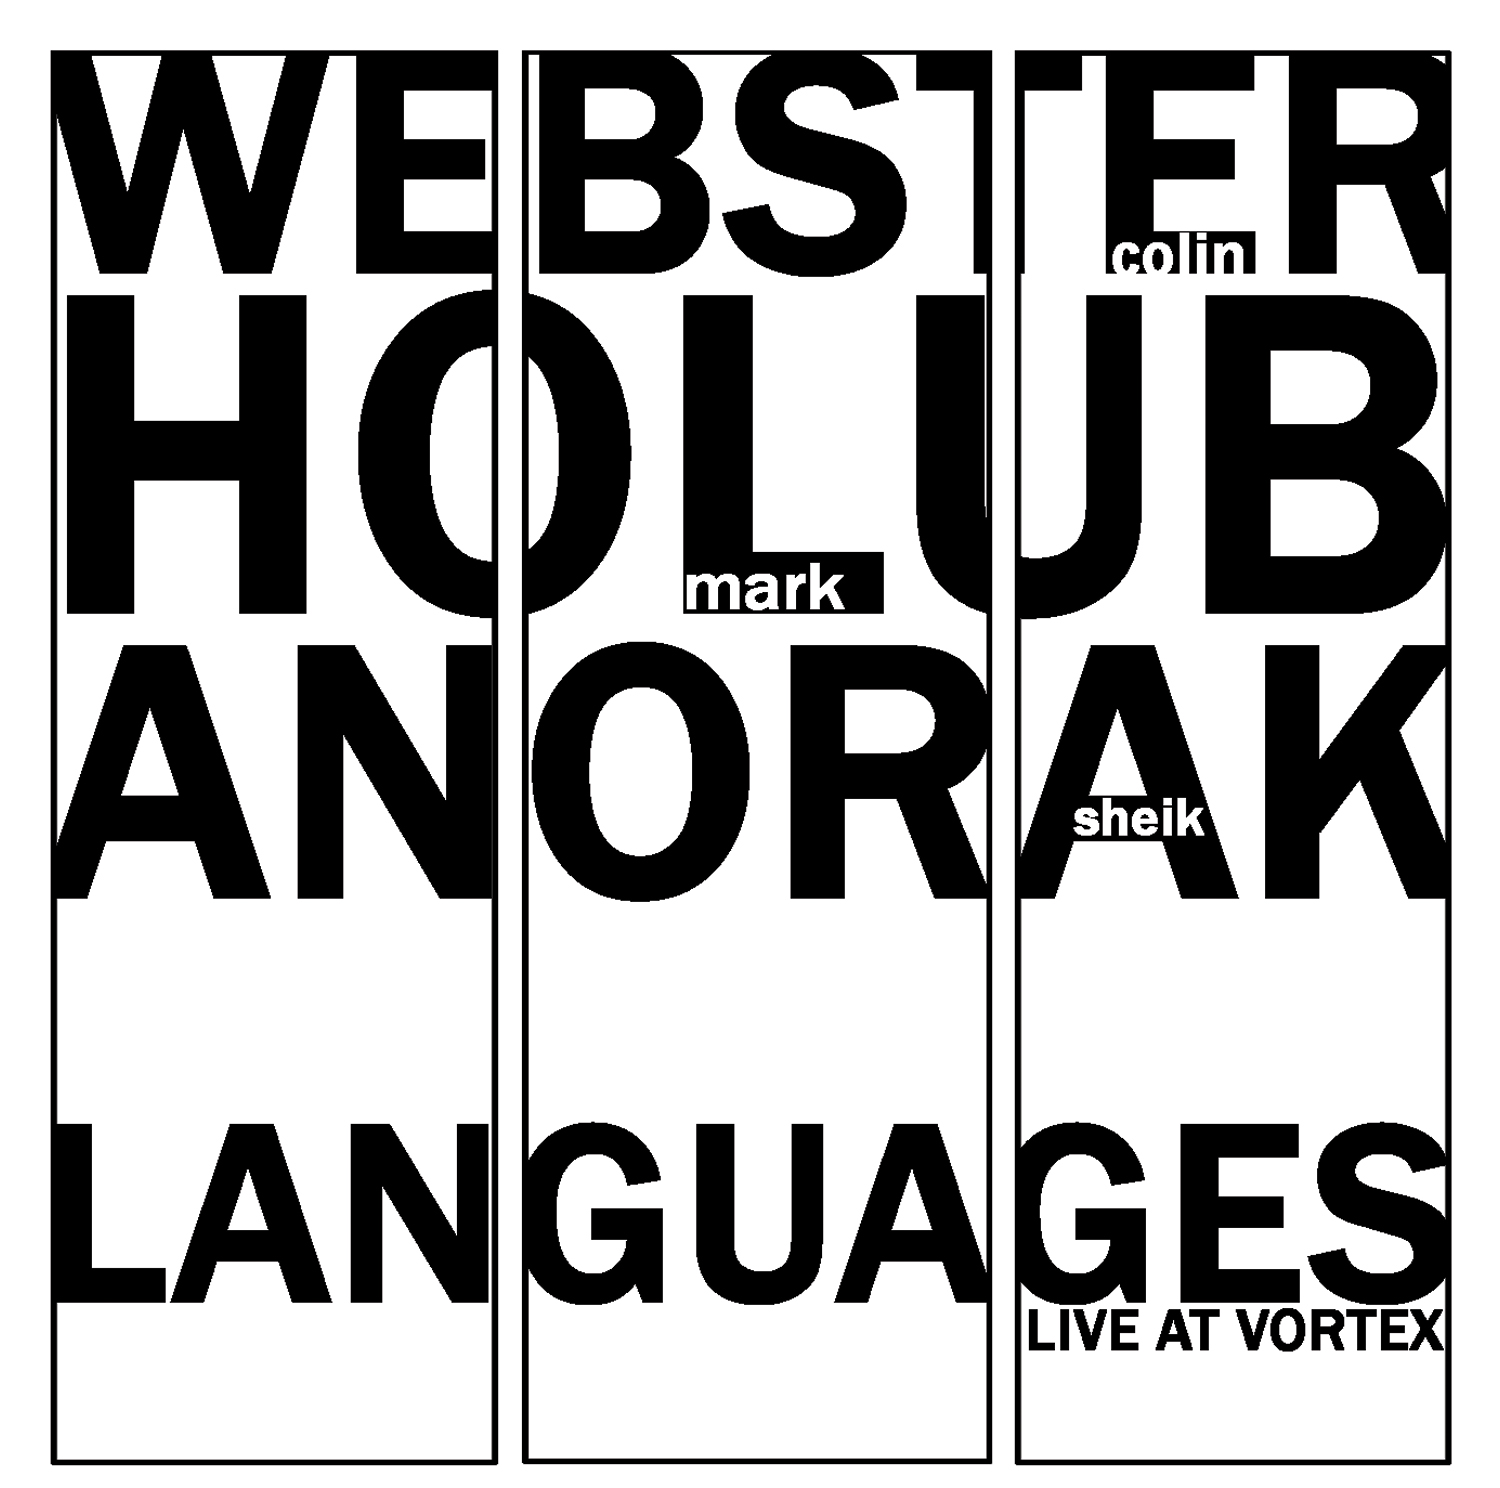 Languages: Live at Vortex